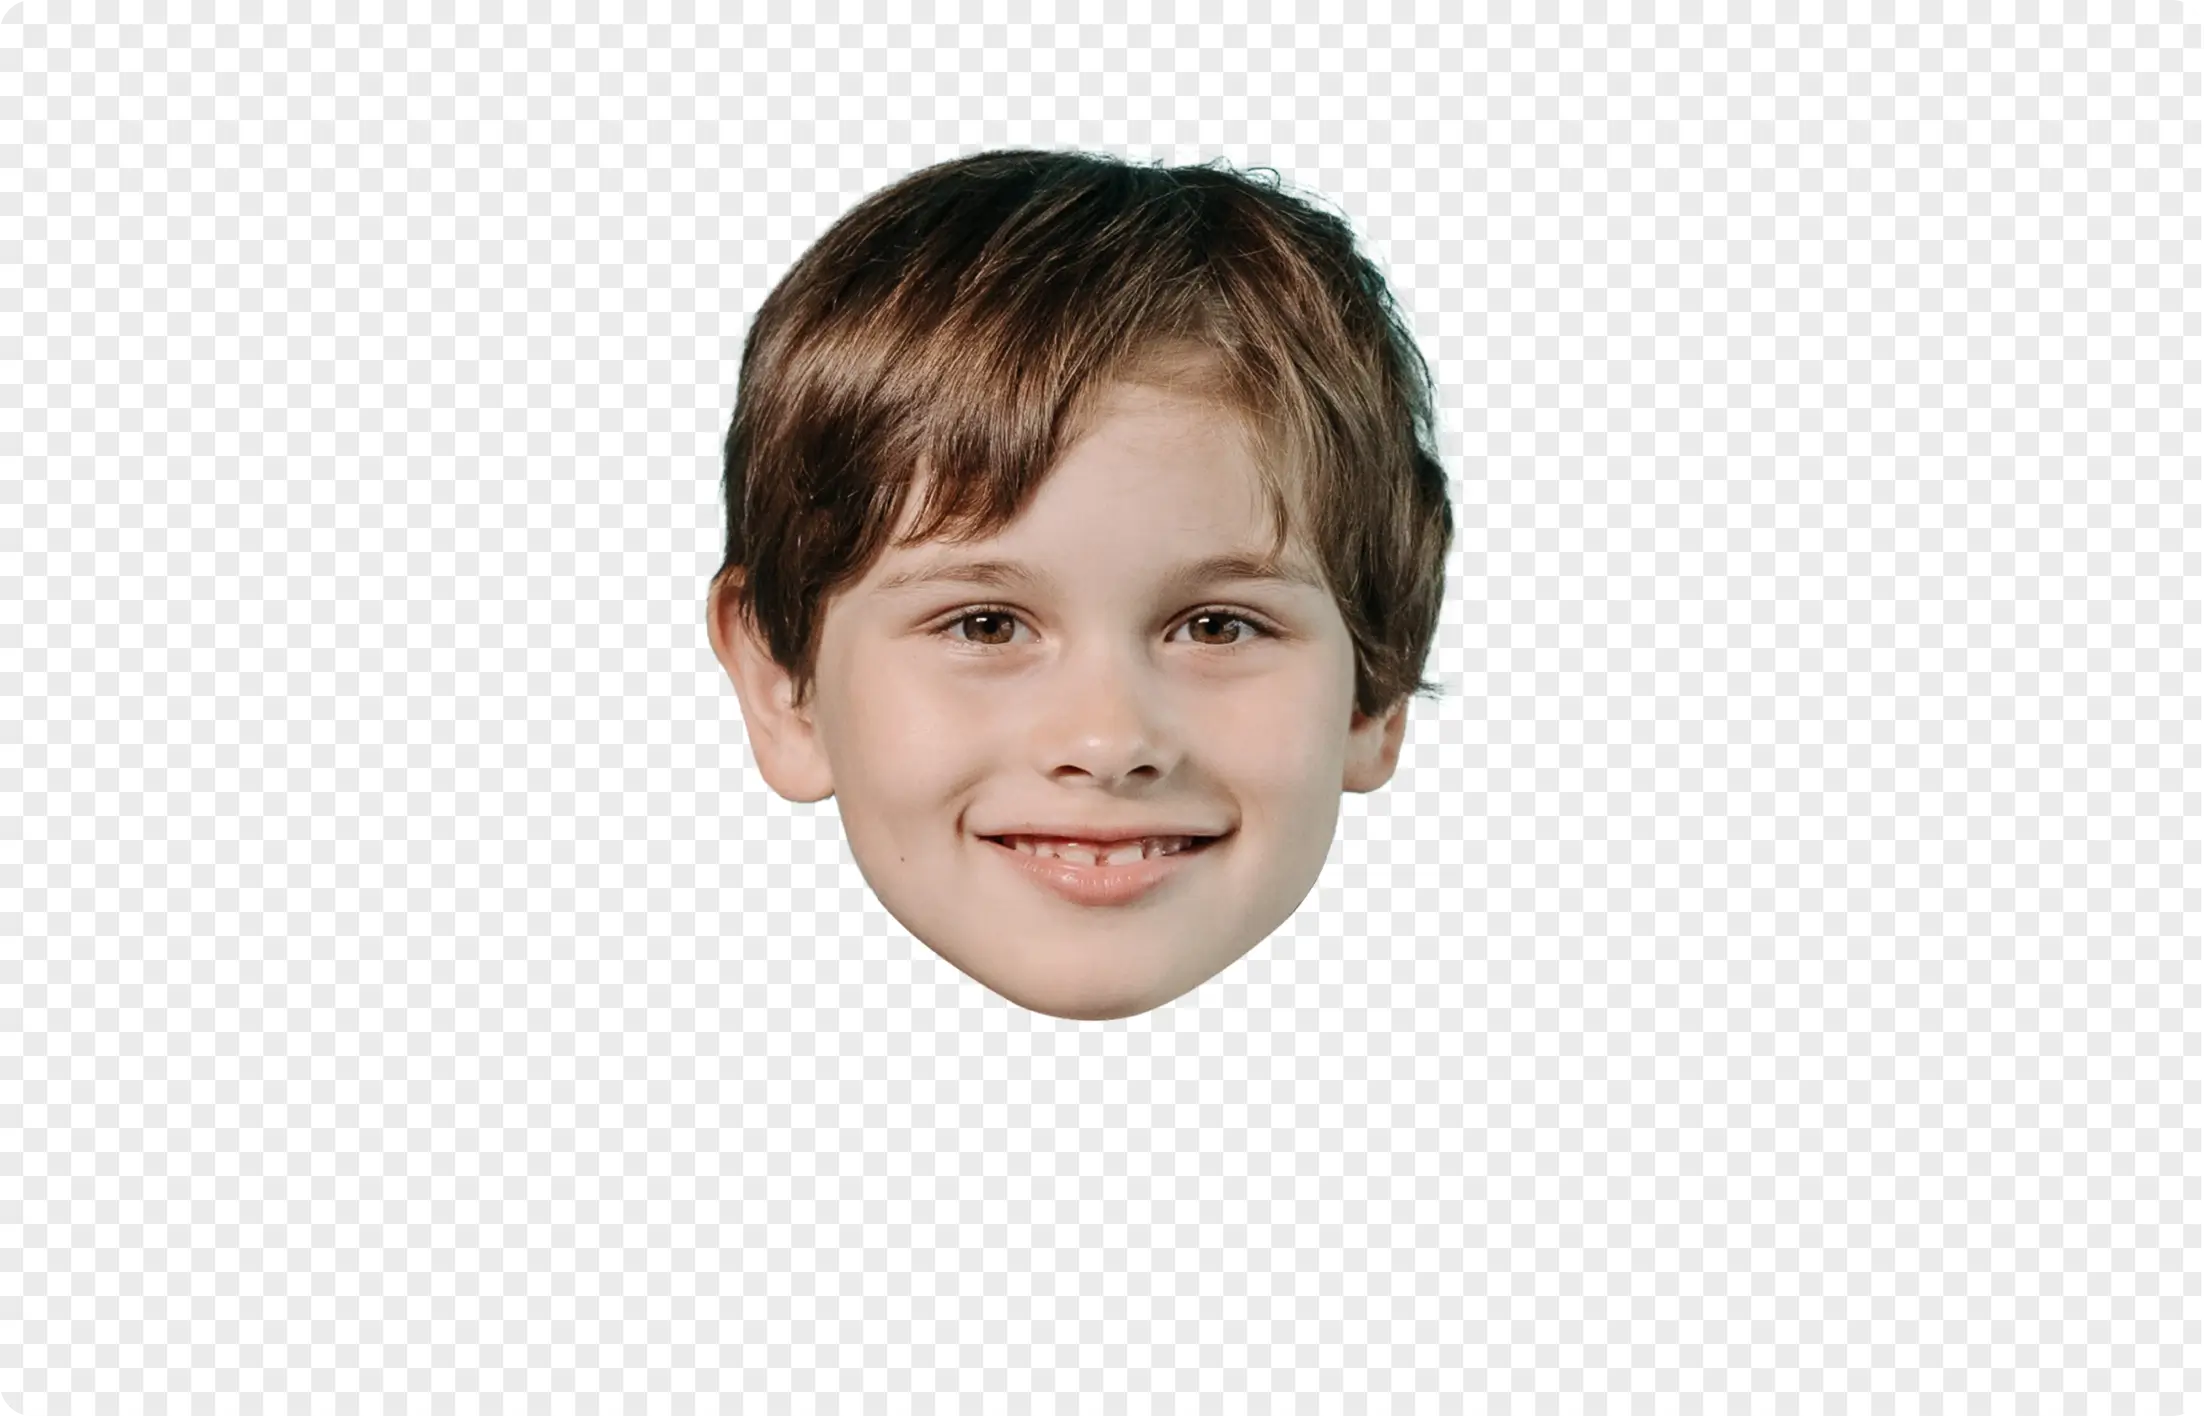 cut out a boy's face photo